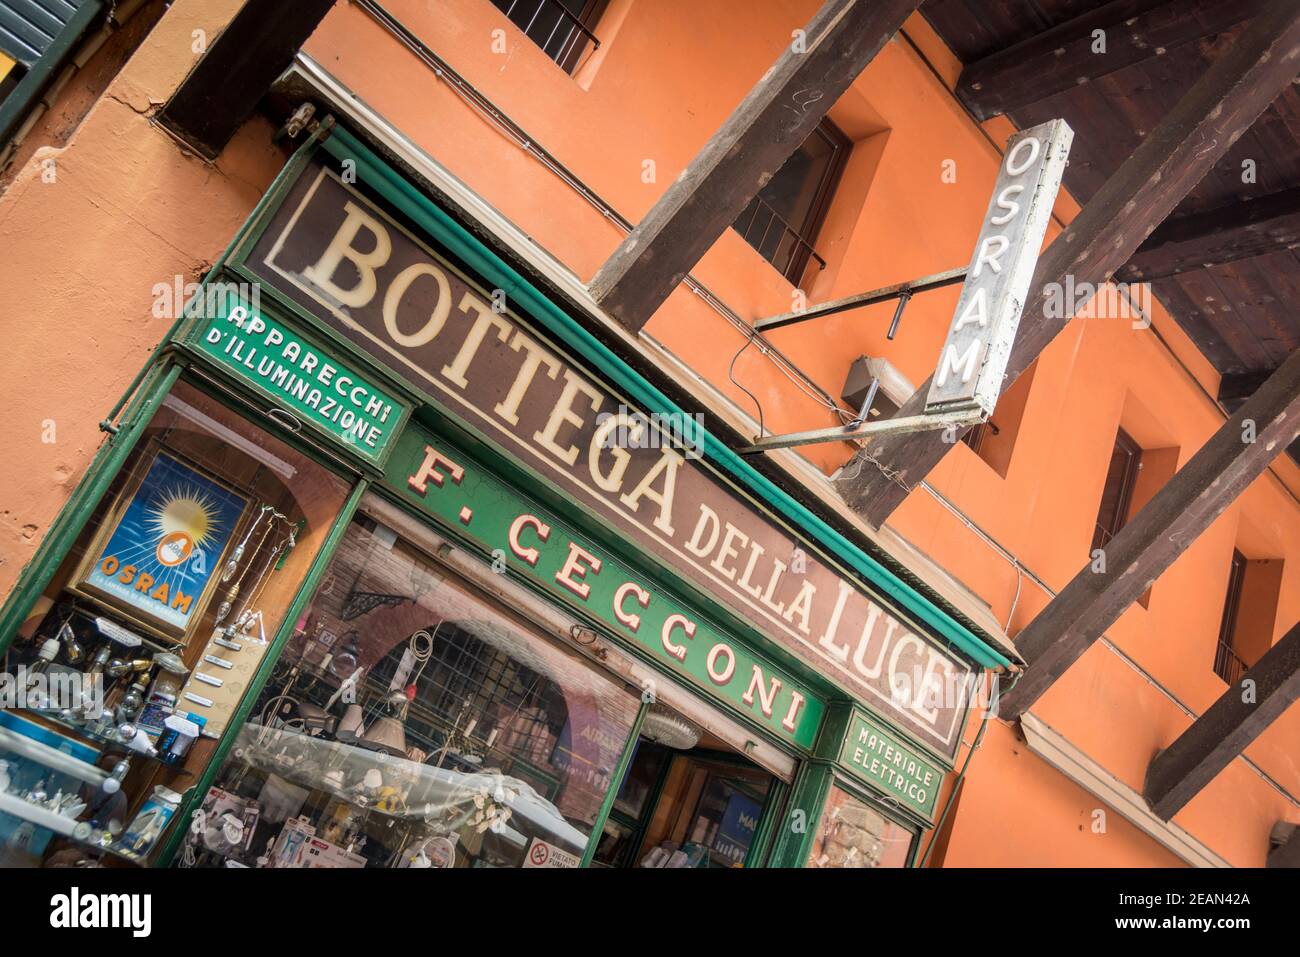 F Geggoni Bottega della luce, n quincaillerie et quincaillerie italiennes et magasin d'éclairage à Bologne, Italie Banque D'Images